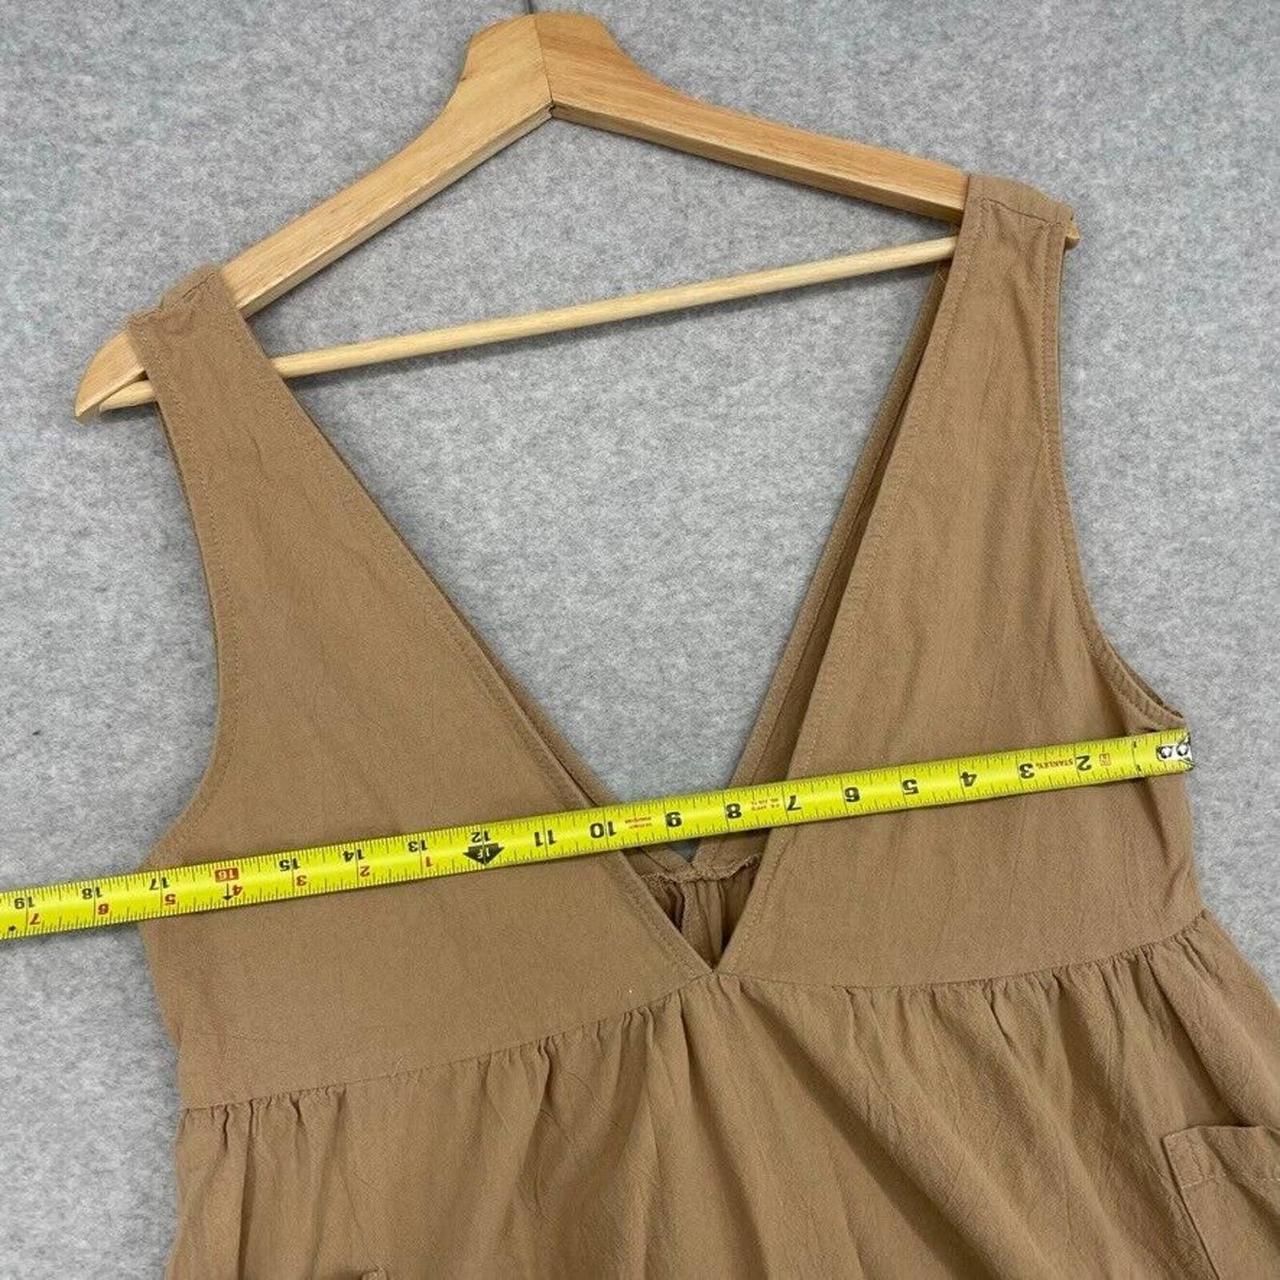 Polagram Dress Size Medium Beige Brown Pocket Side... - Depop